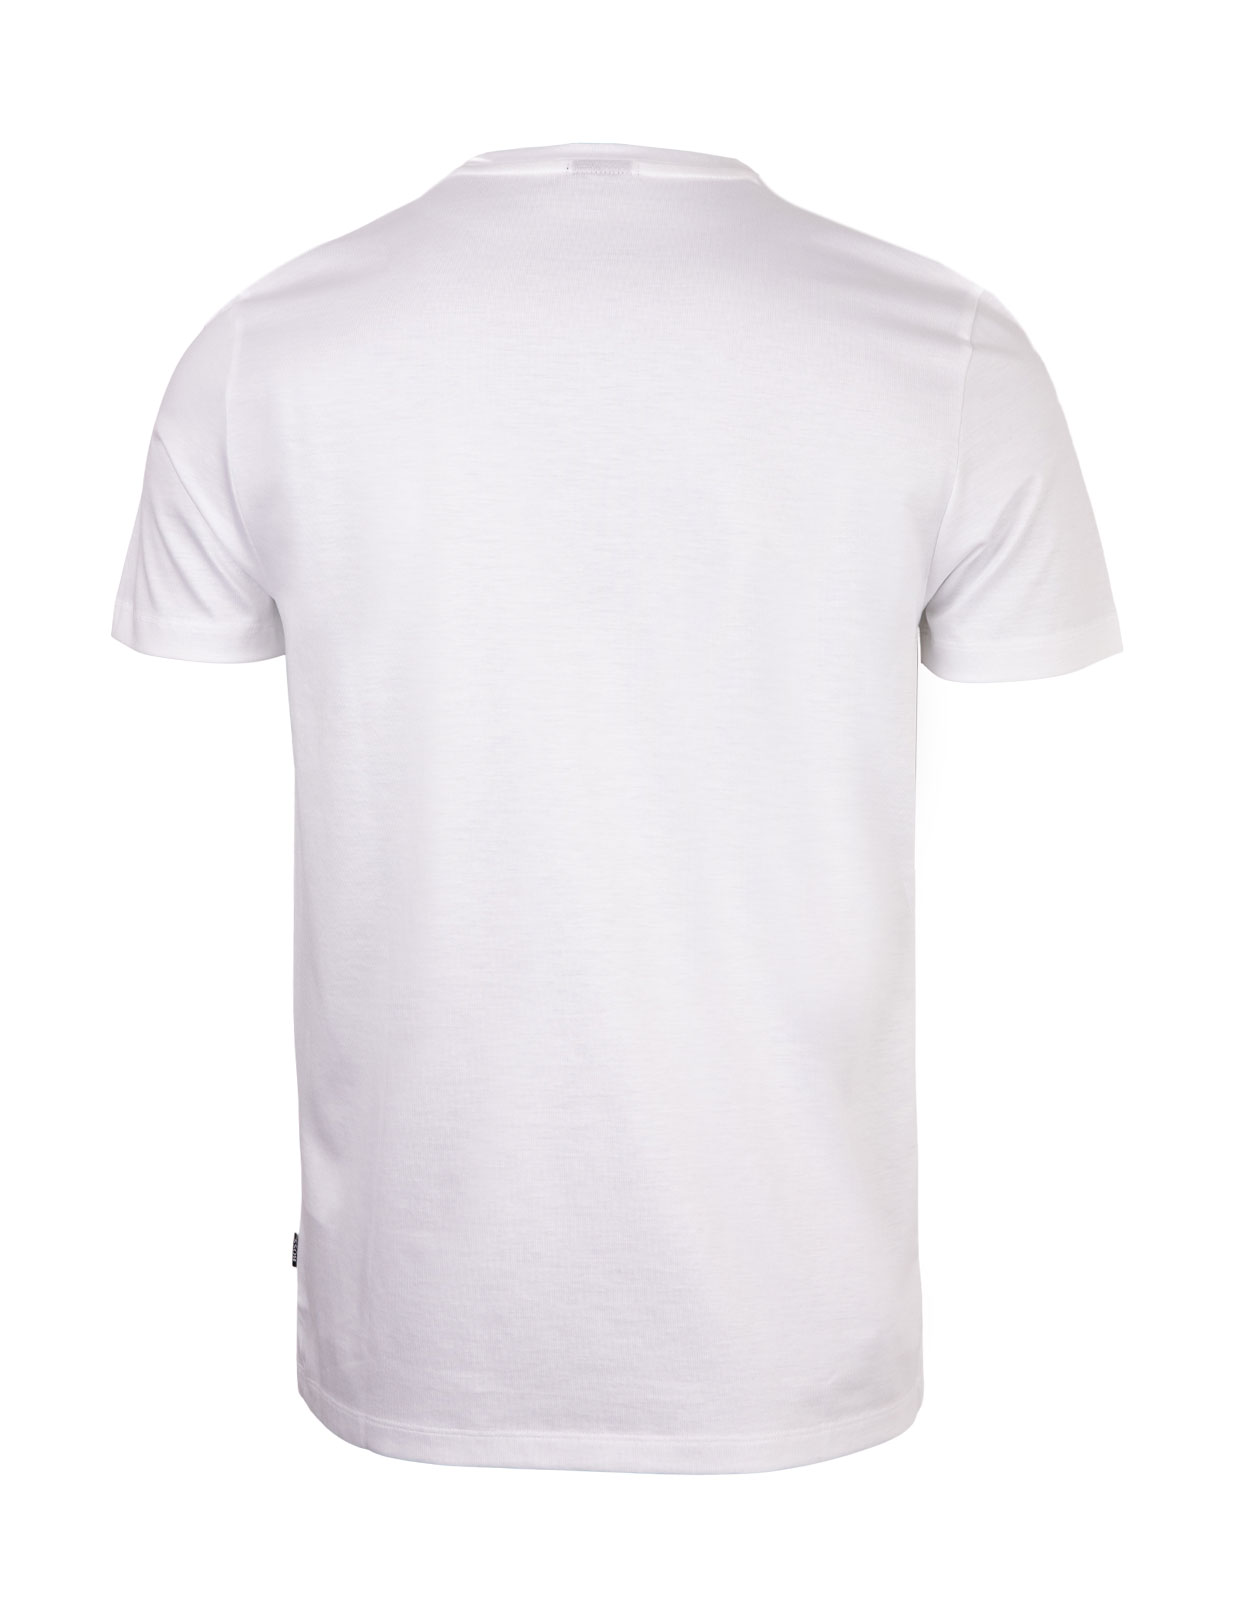 Tessler T-shirt Cotton White Stl L